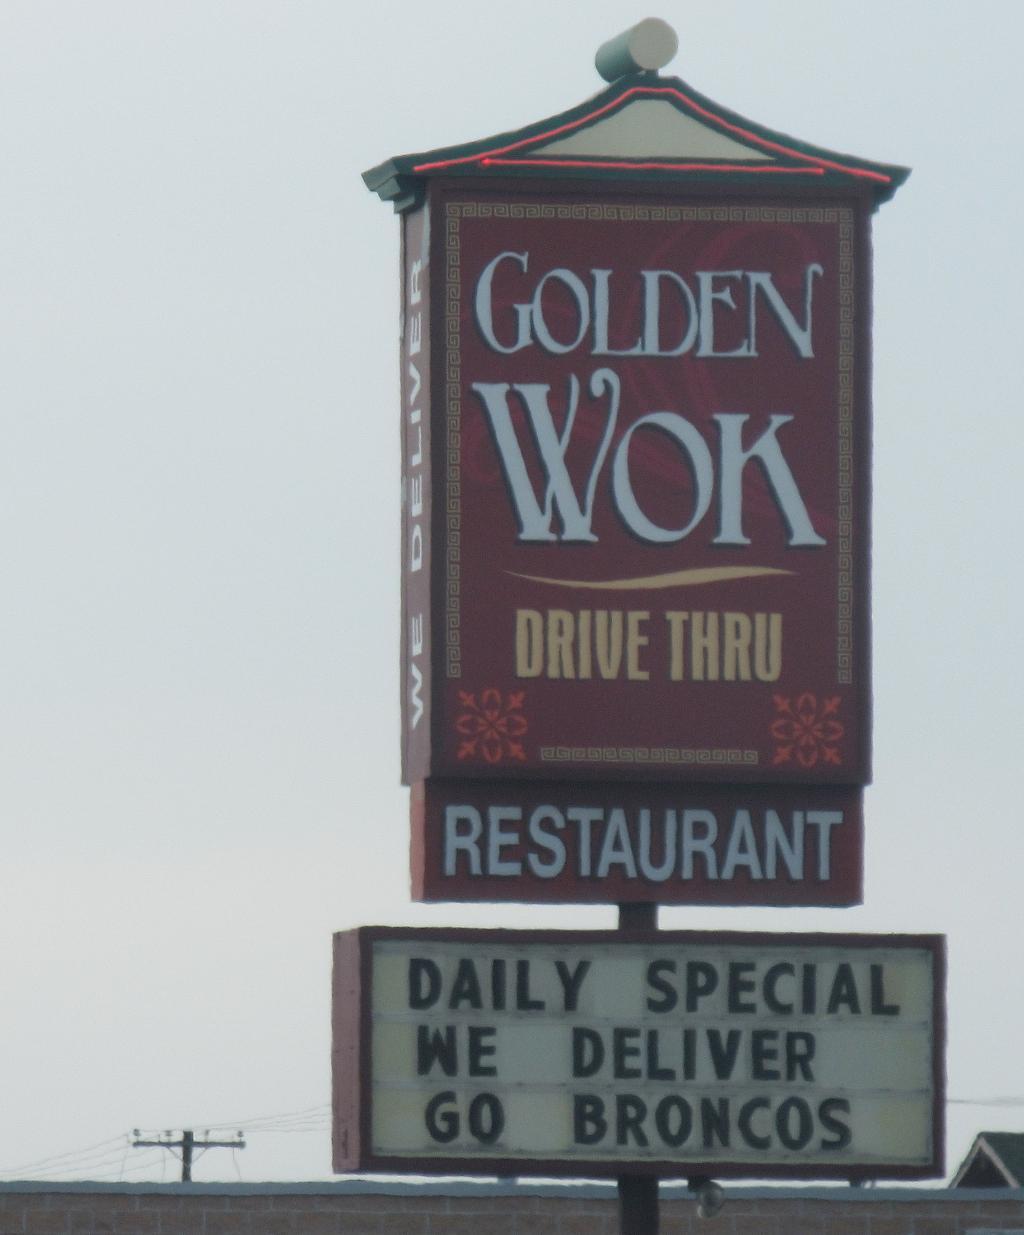 Golden Wok